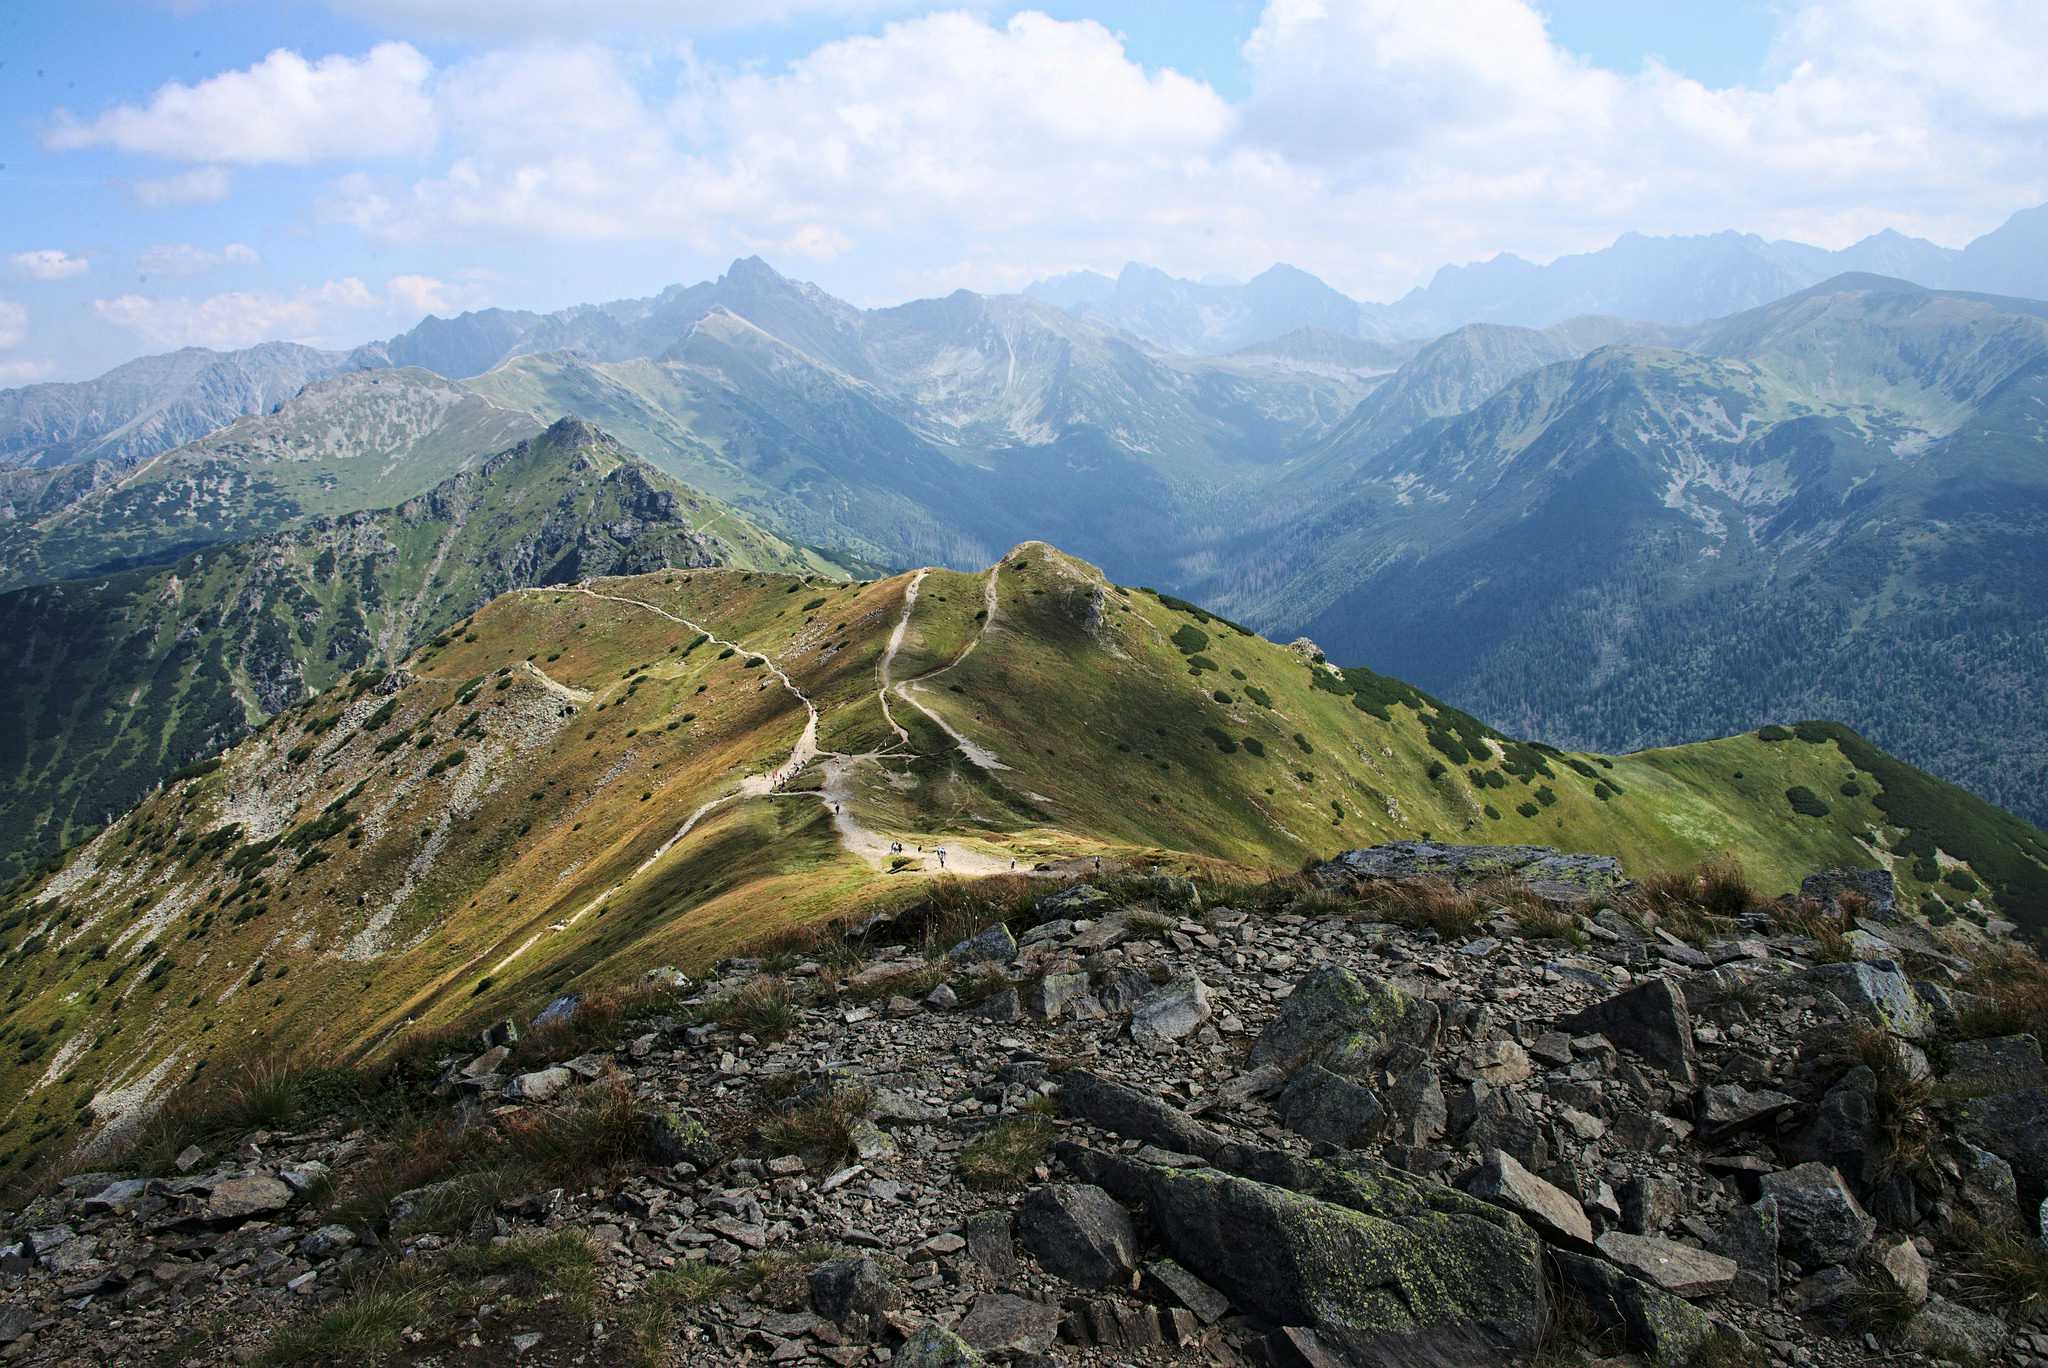 What to Do in Zakopane, Poland? 6 Ideas to Explore the Tatra Mountains